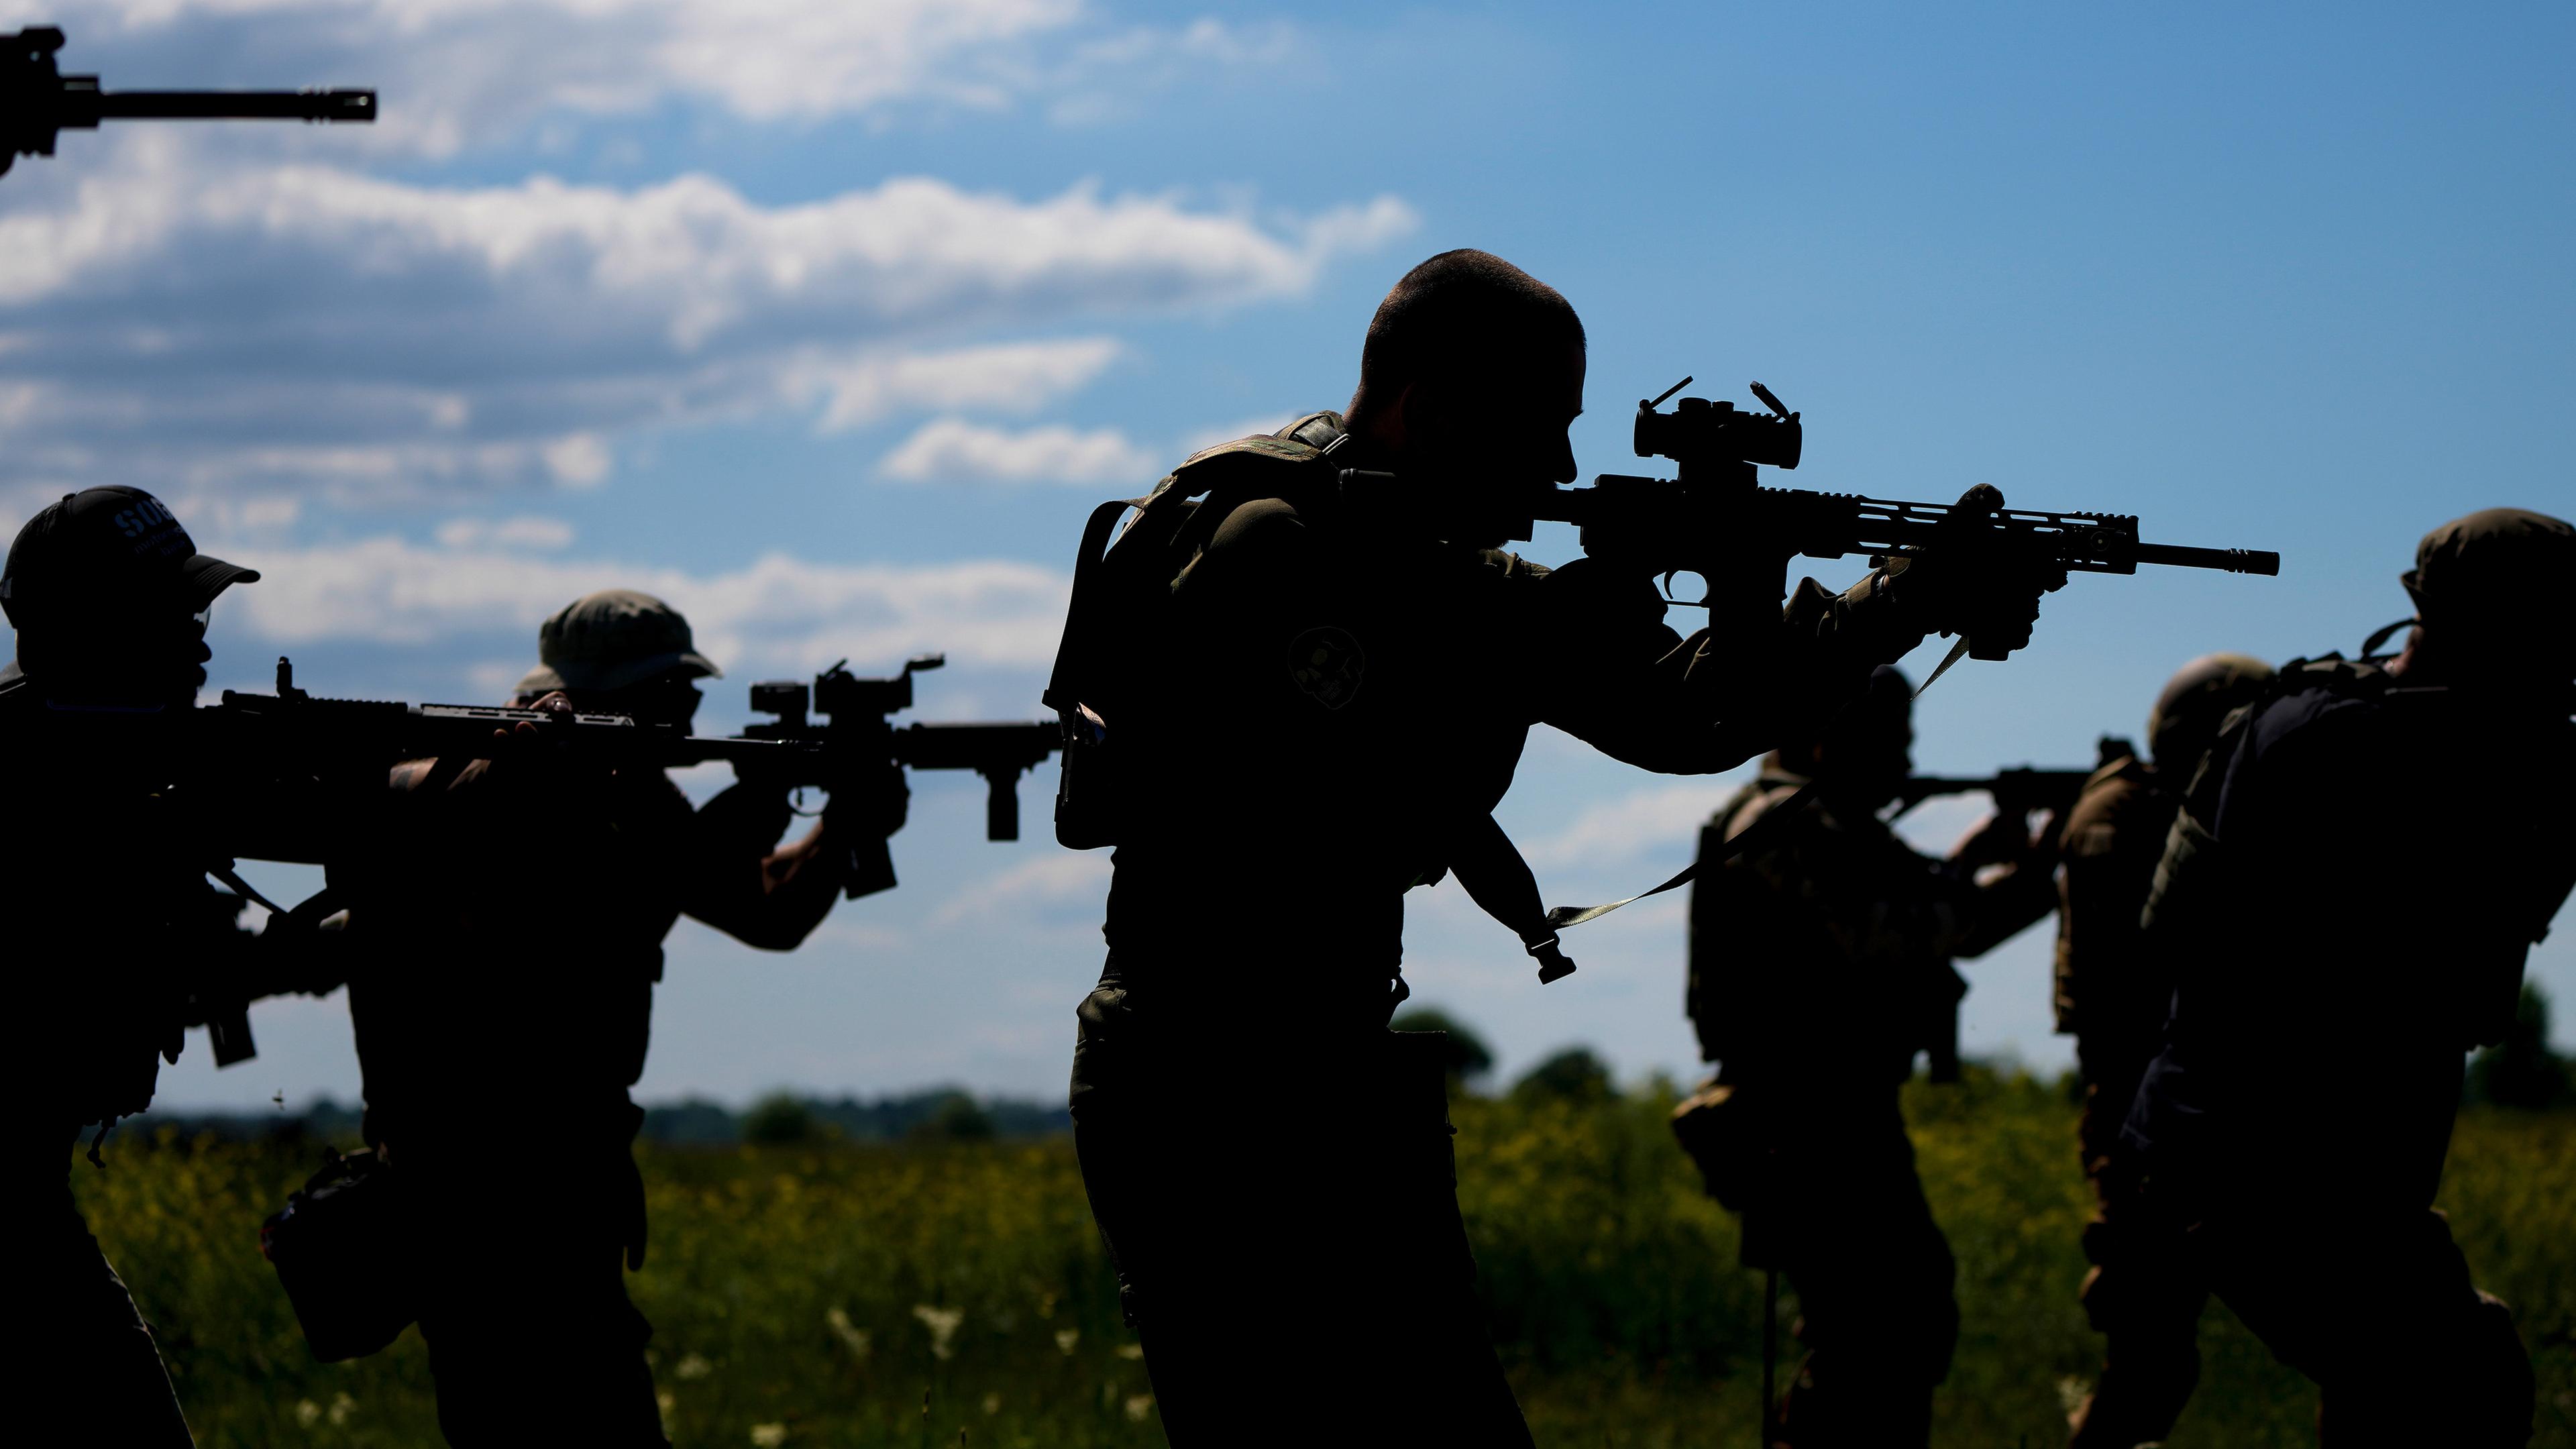 Zivile Milizionäre halten Gewehre während des Trainings auf einem Schießstand in einem Außenbezirk von Kiew (Ukraine), aufgenommen am 07.06.2022